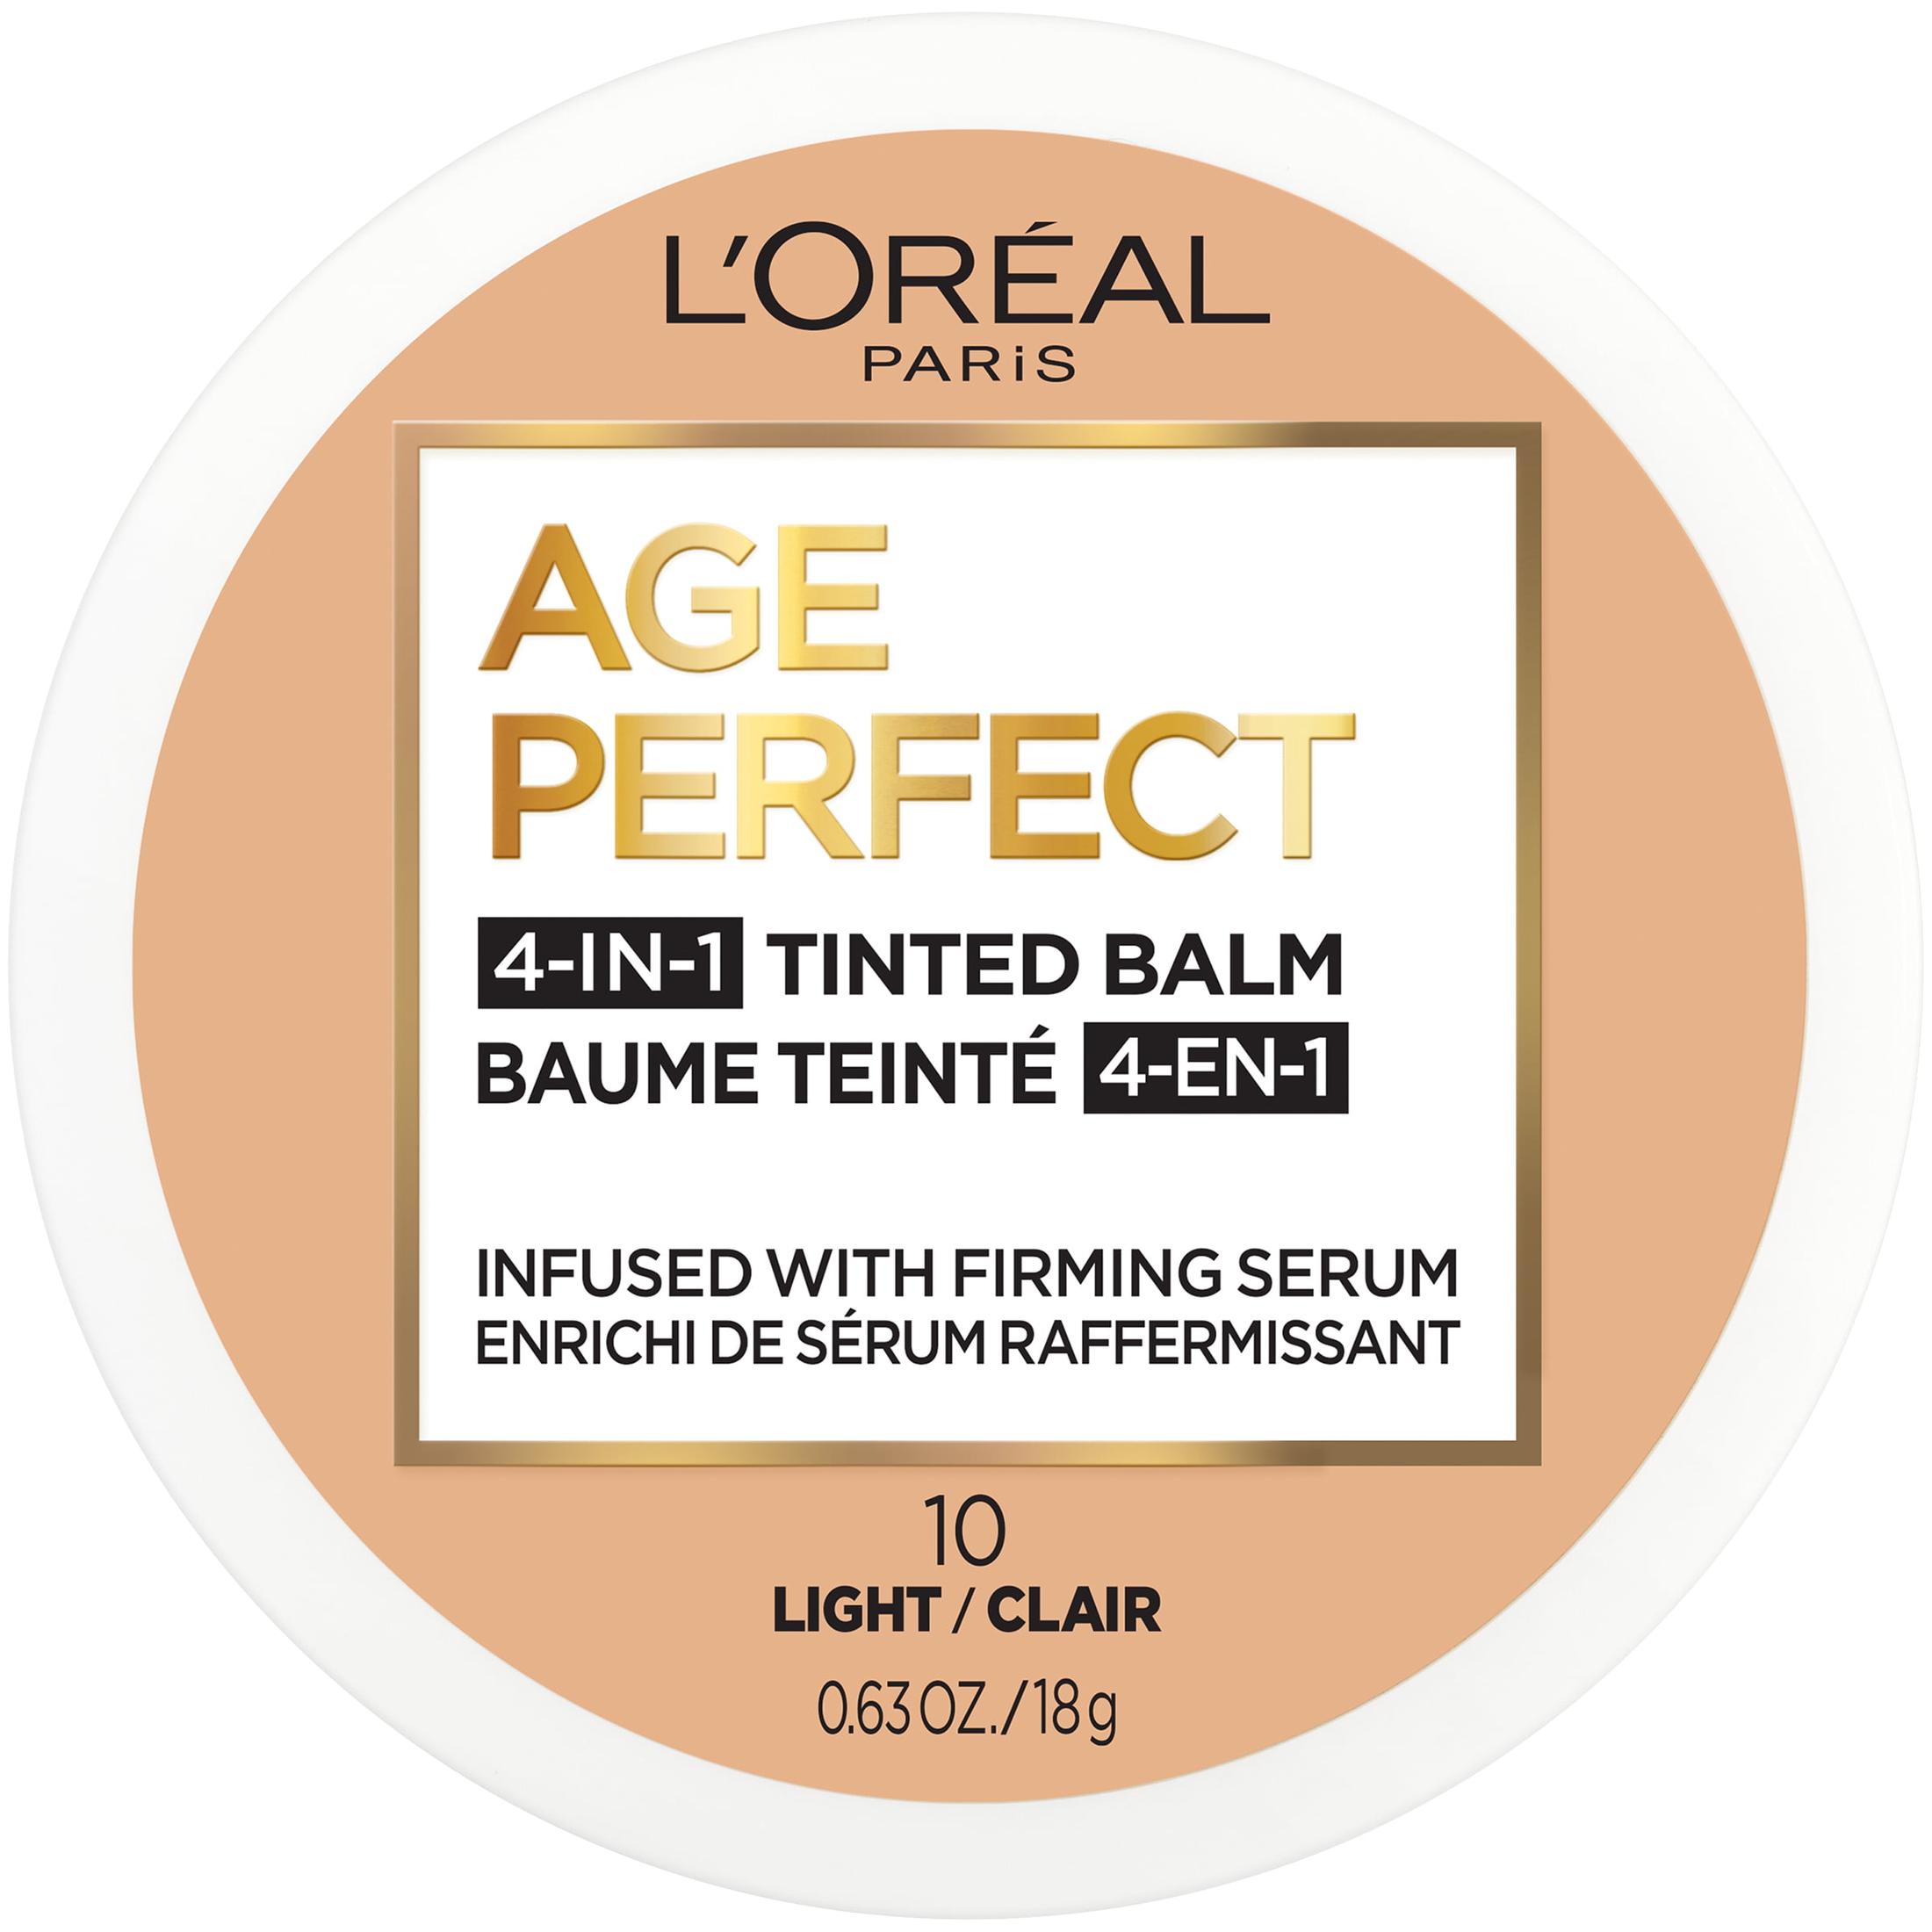 L'Oreal Paris Age Perfect Balm Foundation Makeup, L10 Light, 0.609 fl oz - image 1 of 12